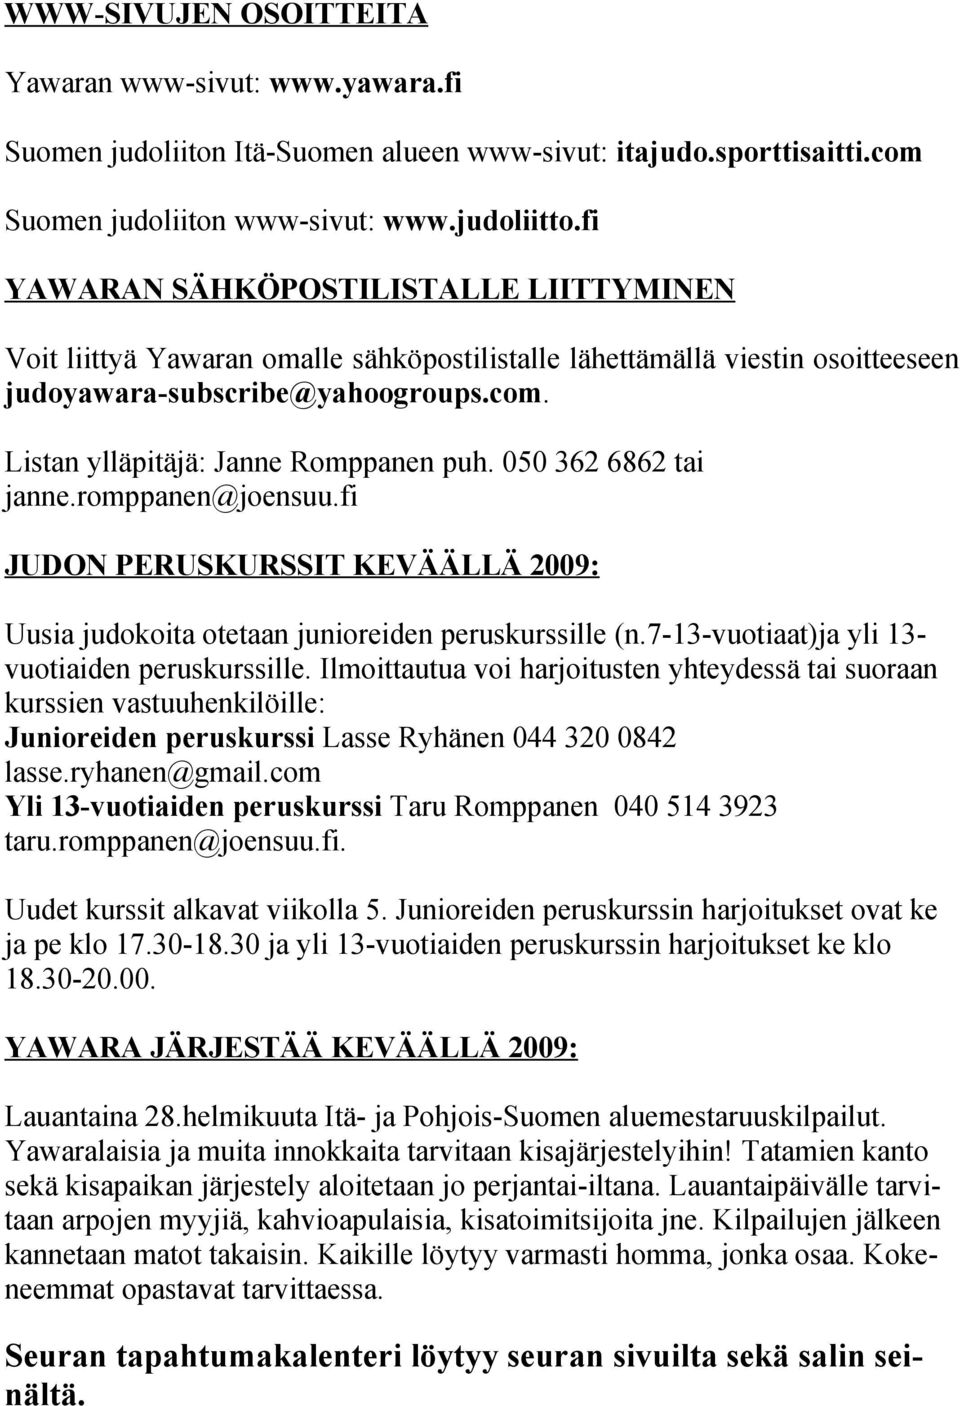 050 362 6862 tai janne.romppanen@joensuu.fi JUDON PERUSKURSSIT KEVÄÄLLÄ 2009: Uusia judokoita otetaan junioreiden peruskurssille (n.7-13-vuotiaat)ja yli 13- vuotiaiden peruskurssille.